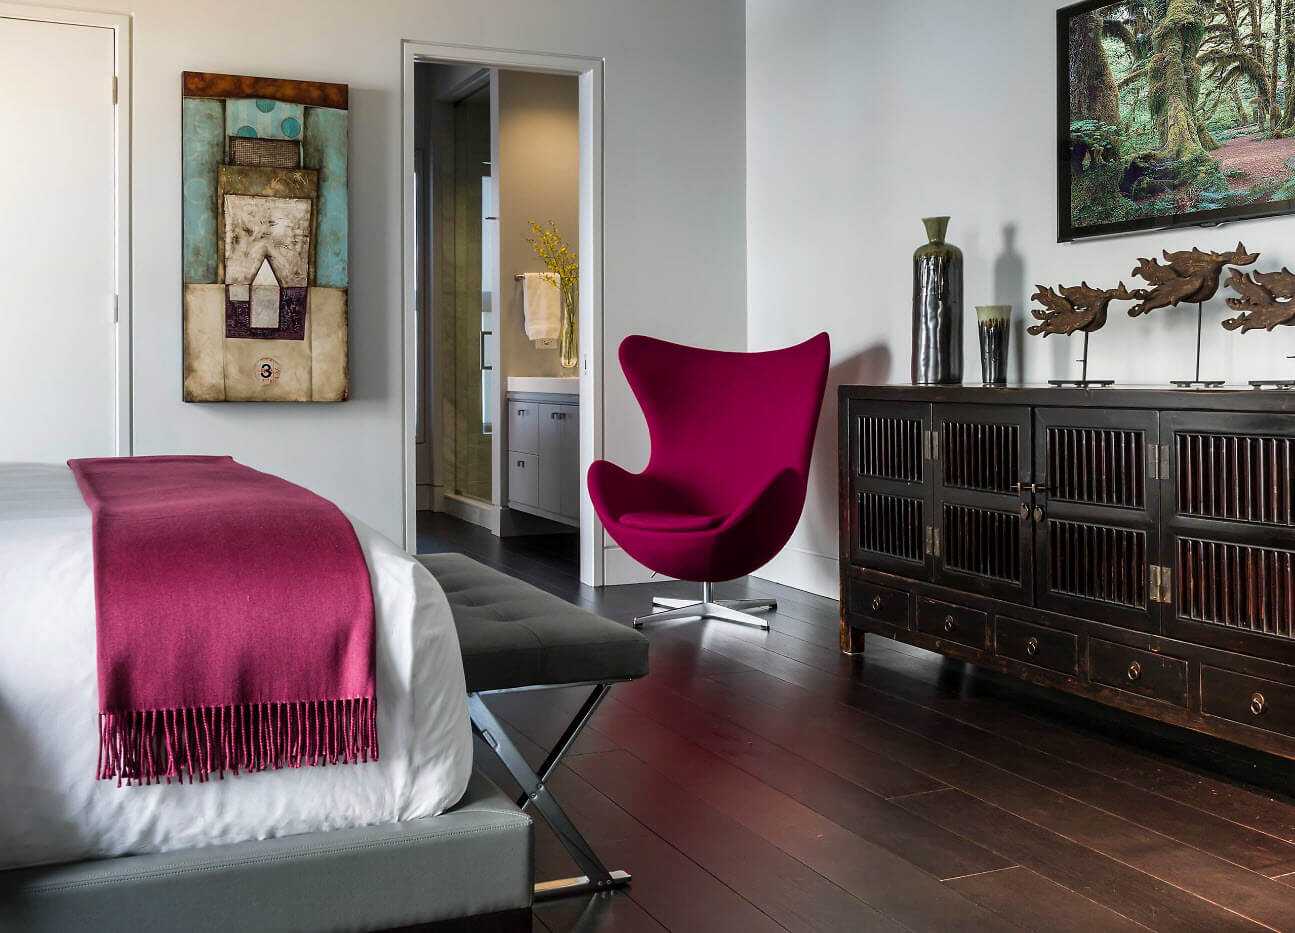 Мебель для спальни: элементы интерьера, дизайн и цены. как выбрать спальный гарнитур?